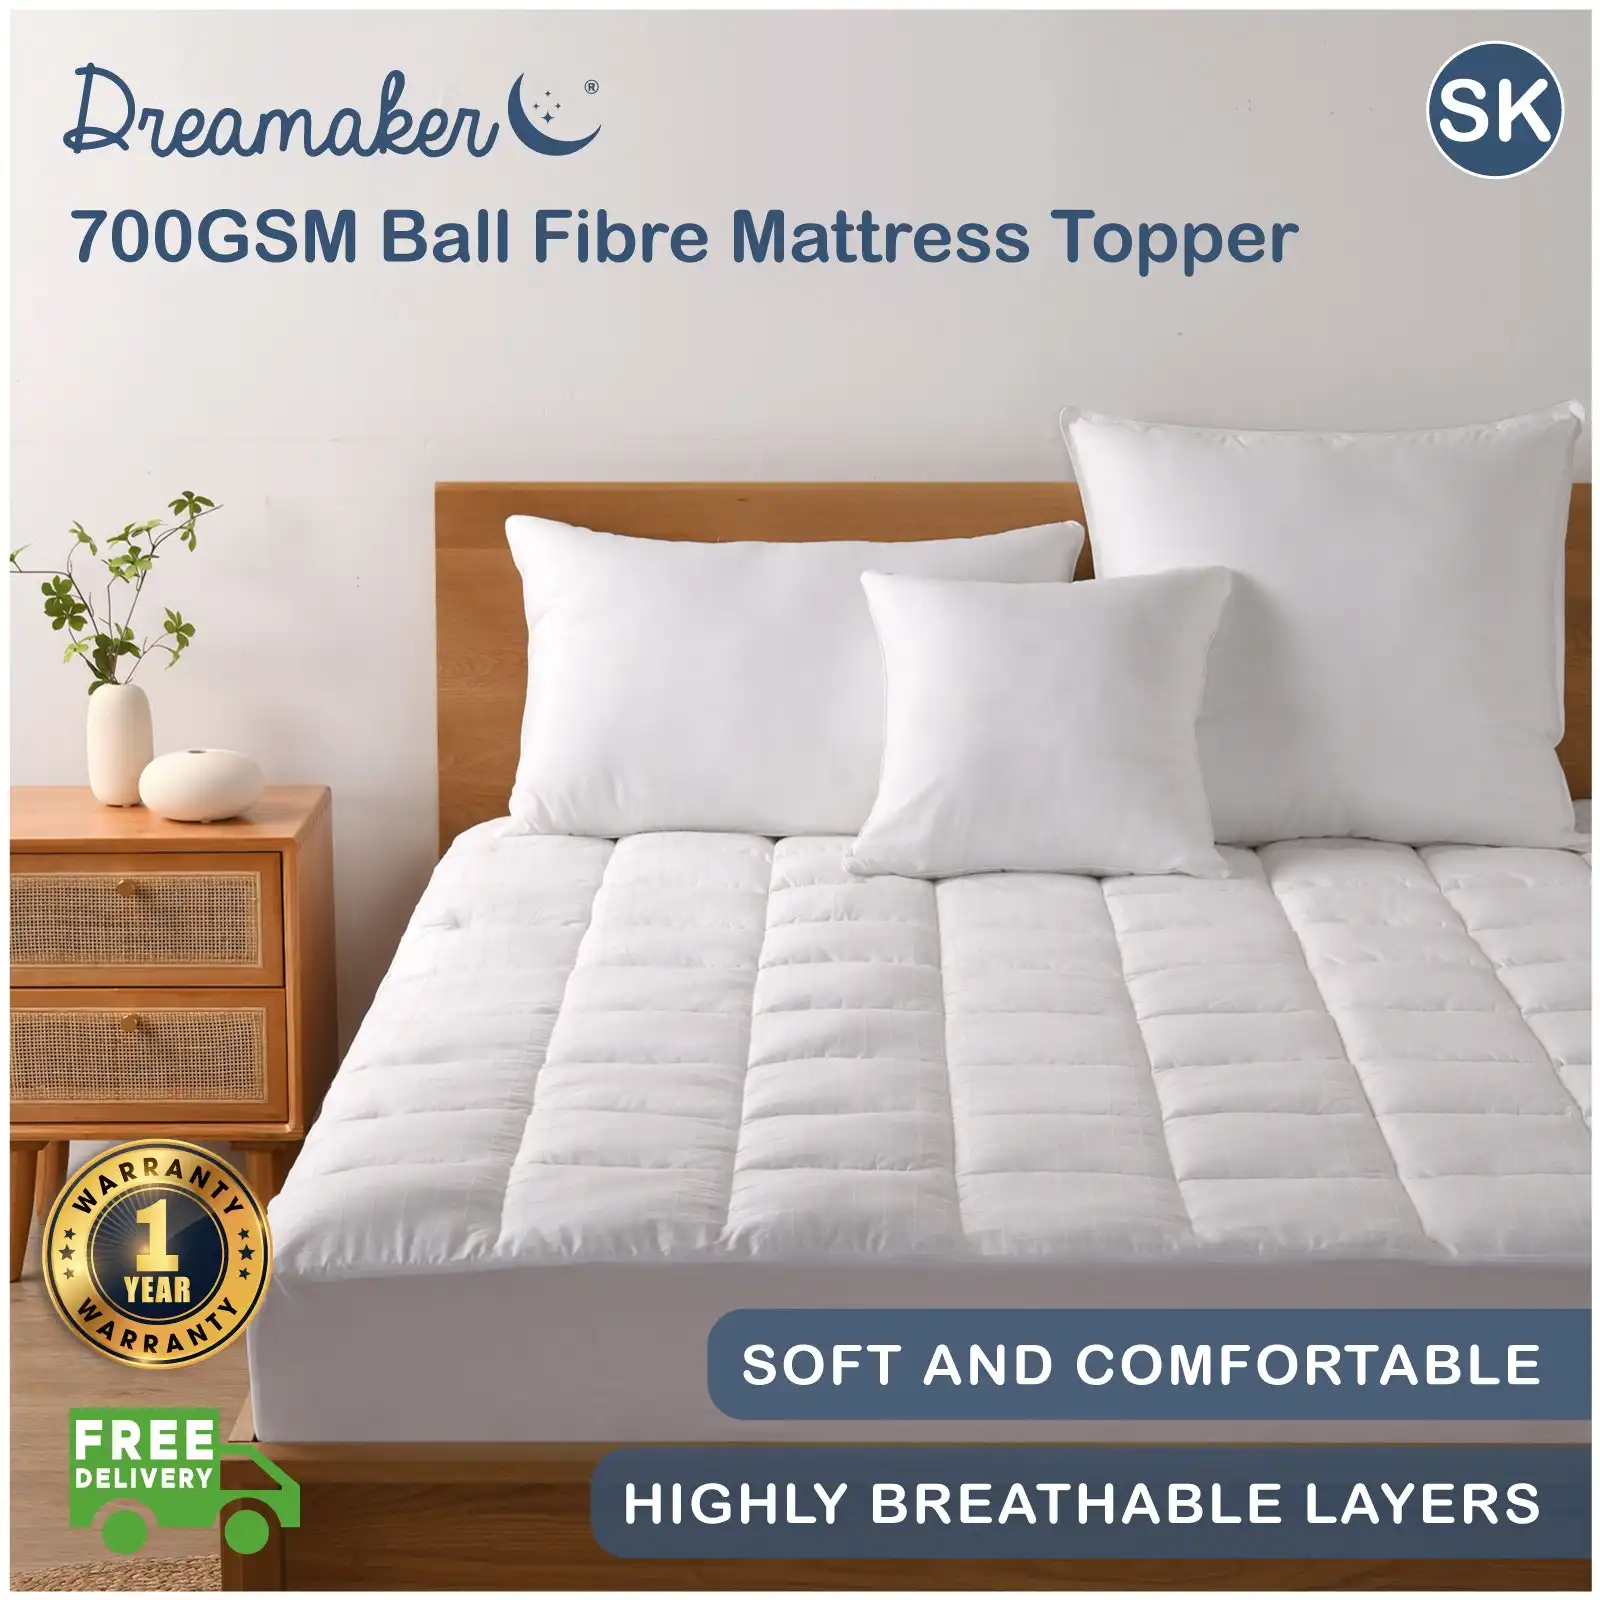 Dreamaker 700GSM Ball Fibre Mattress Topper Super King Bed